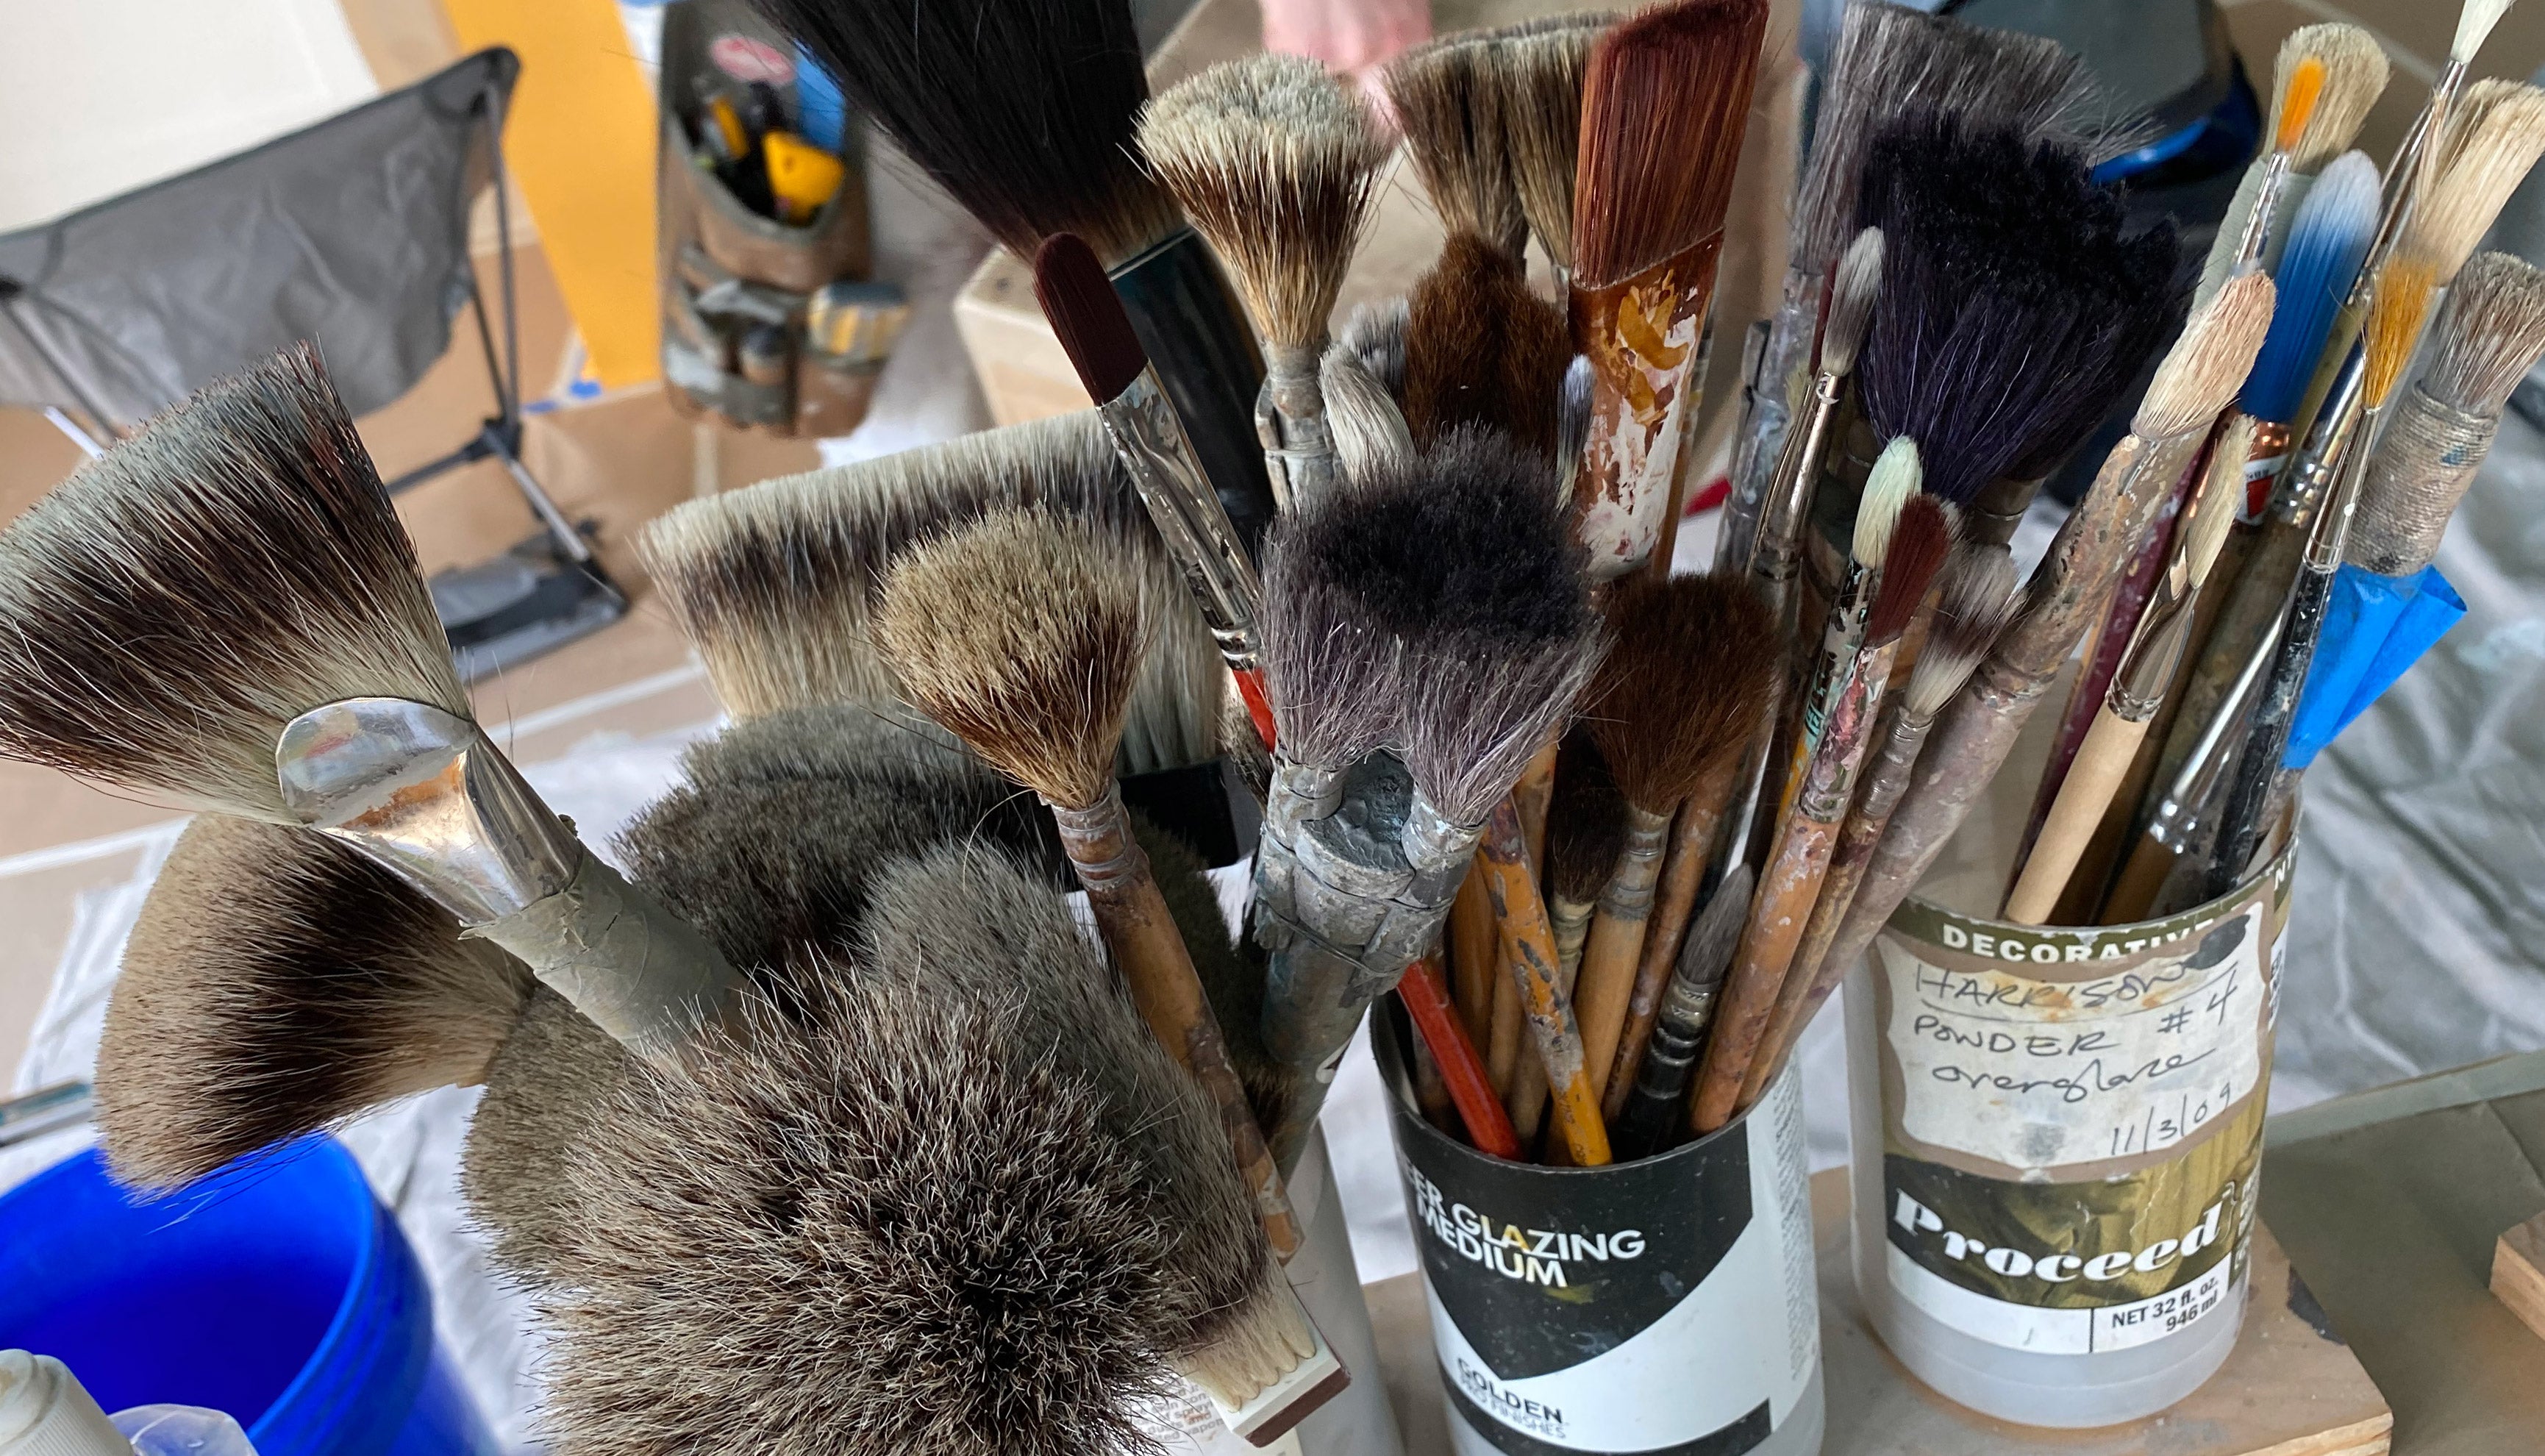 Faux marble brush mini kit for oil paint